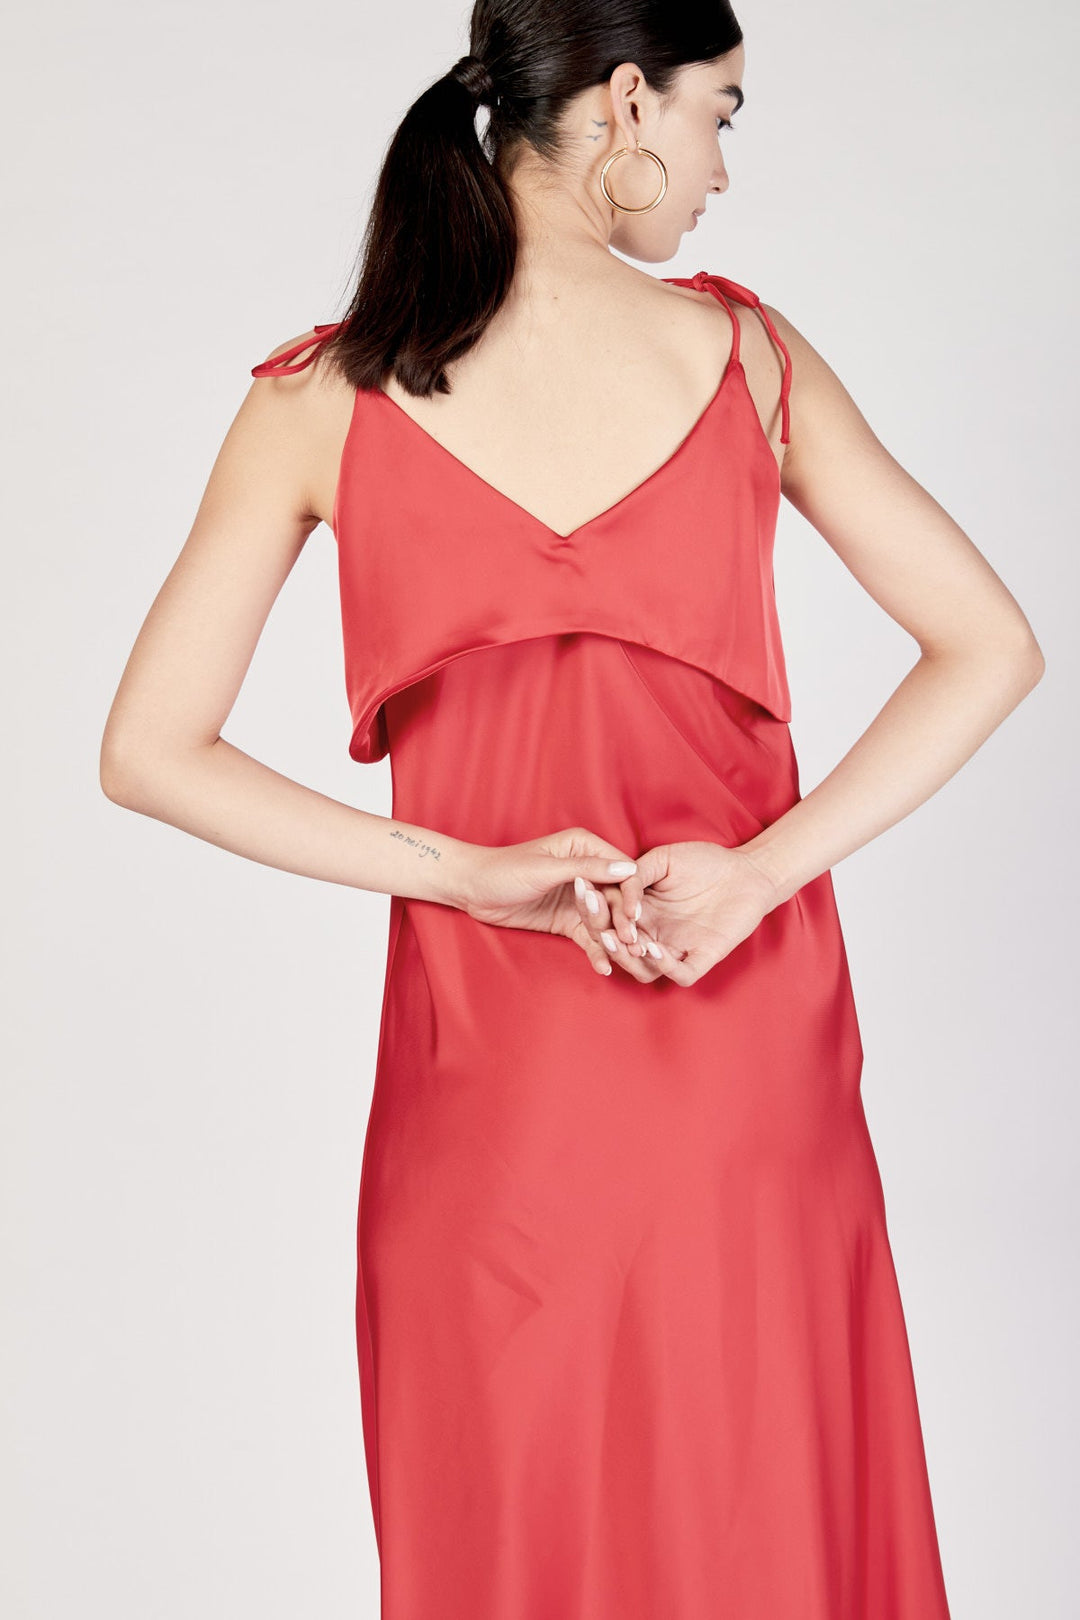 שמלת מידי שרדוני בצבע אדום - Razili Studio